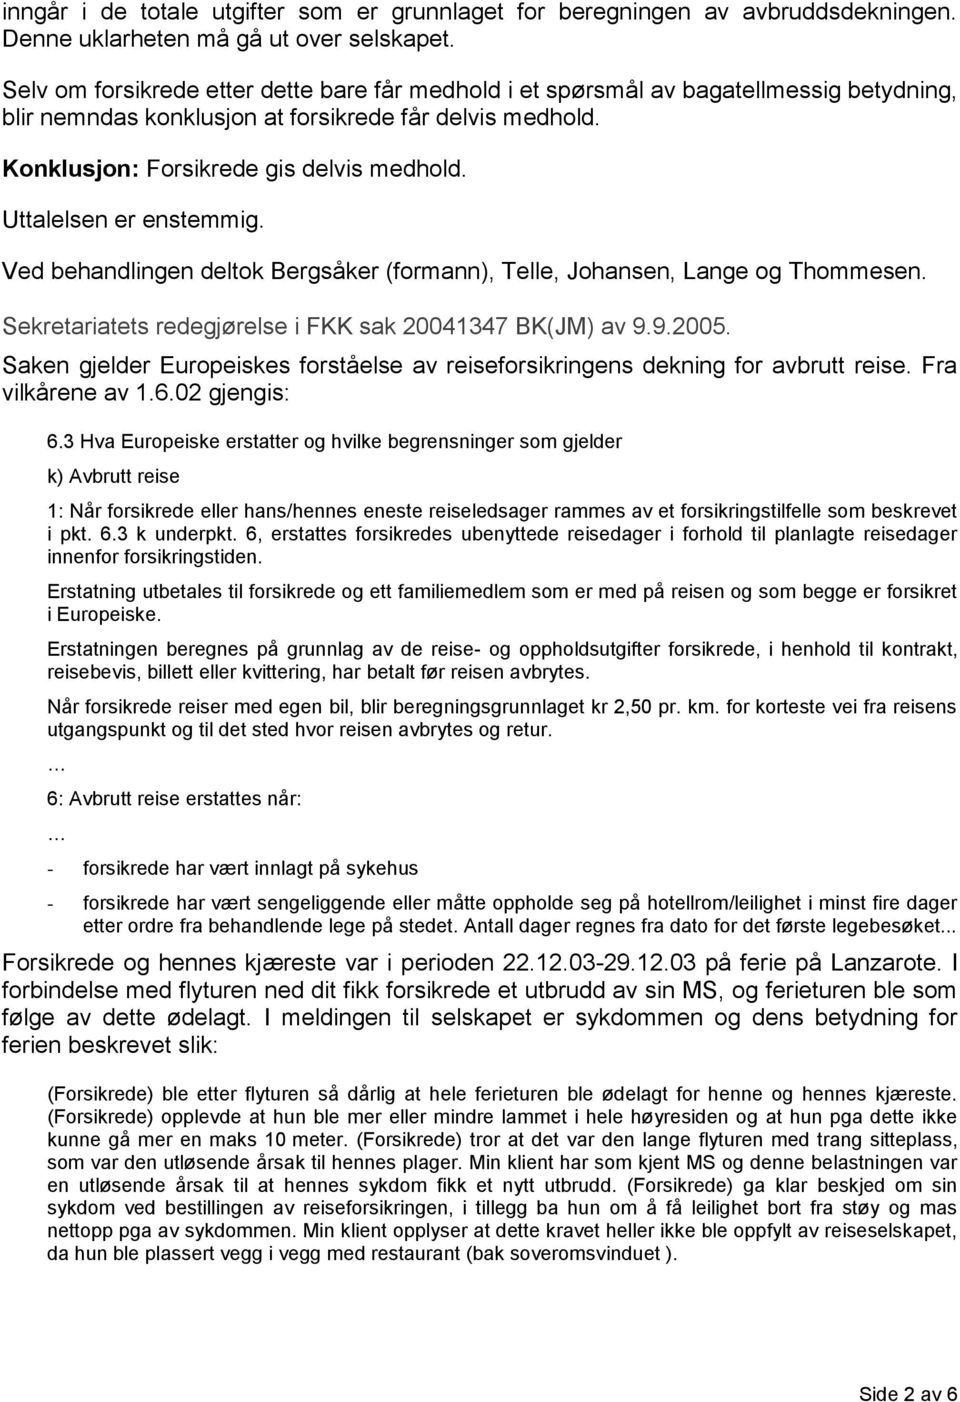 Uttalelsen er enstemmig. Ved behandlingen deltok Bergsåker (formann), Telle, Johansen, Lange og Thommesen. Sekretariatets redegjørelse i FKK sak 20041347 BK(JM) av 9.9.2005.